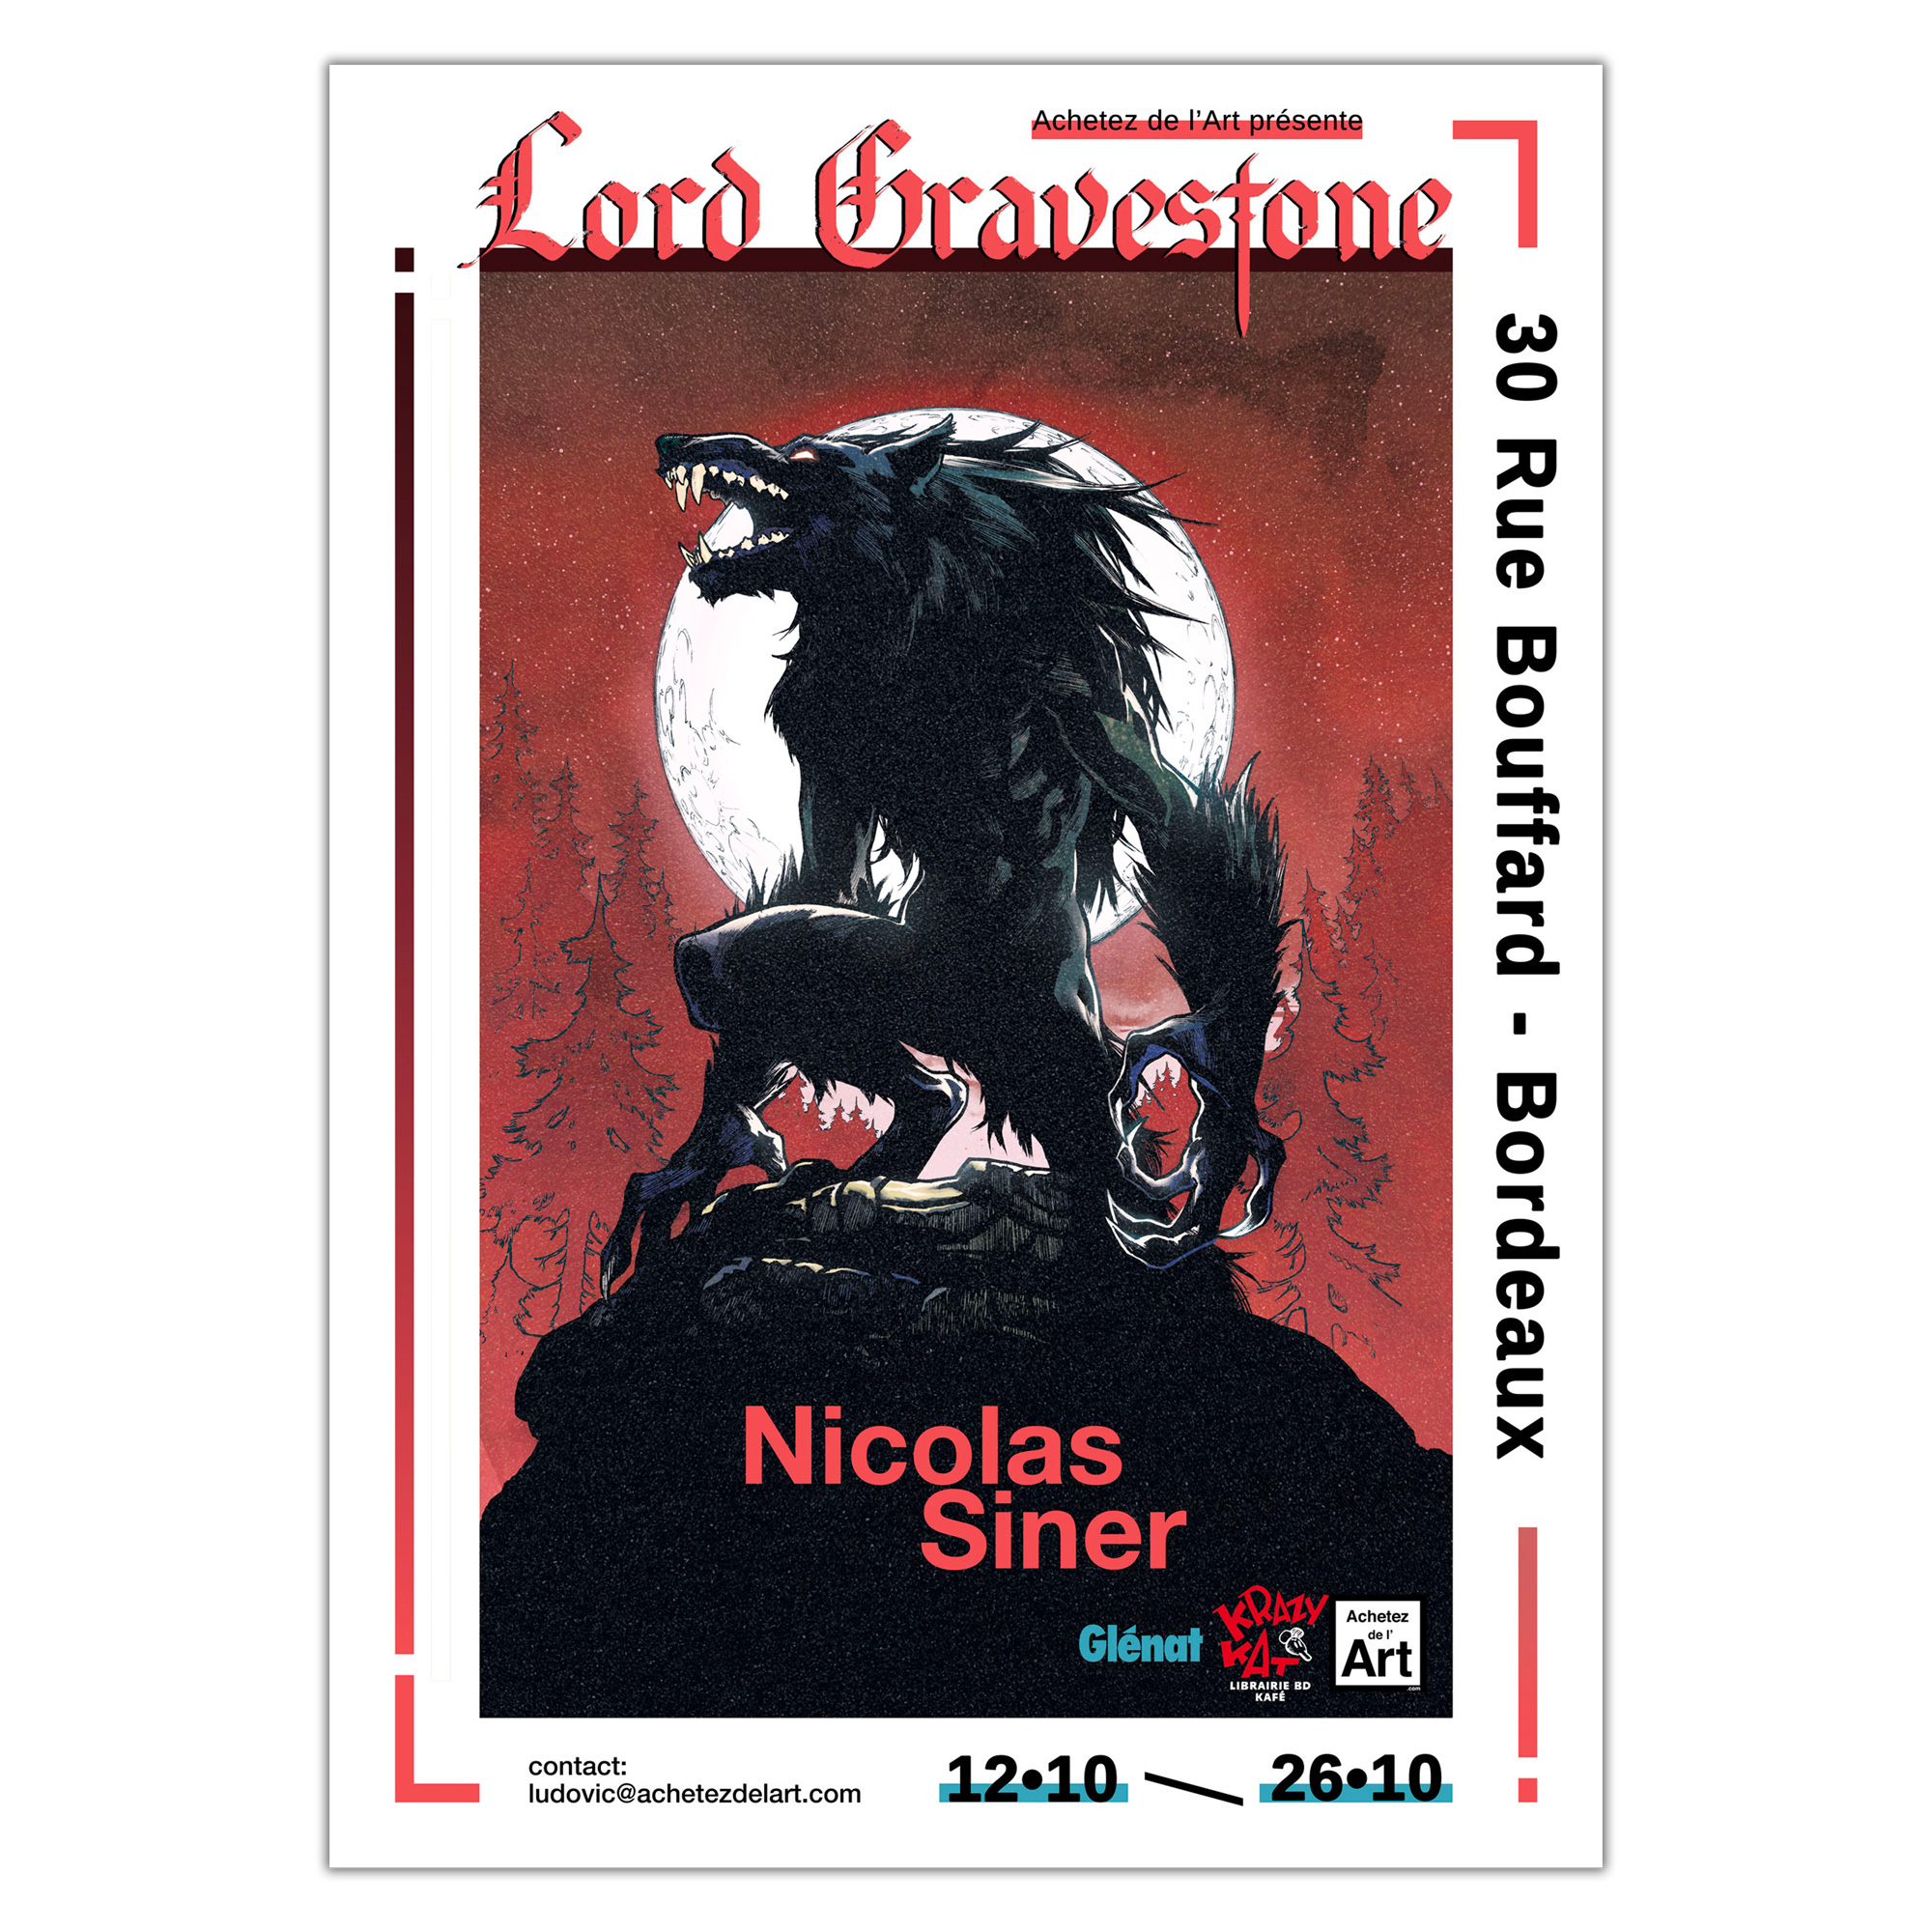 Exposition des planches de Lord Gravestone 2 de Nicolas Siner